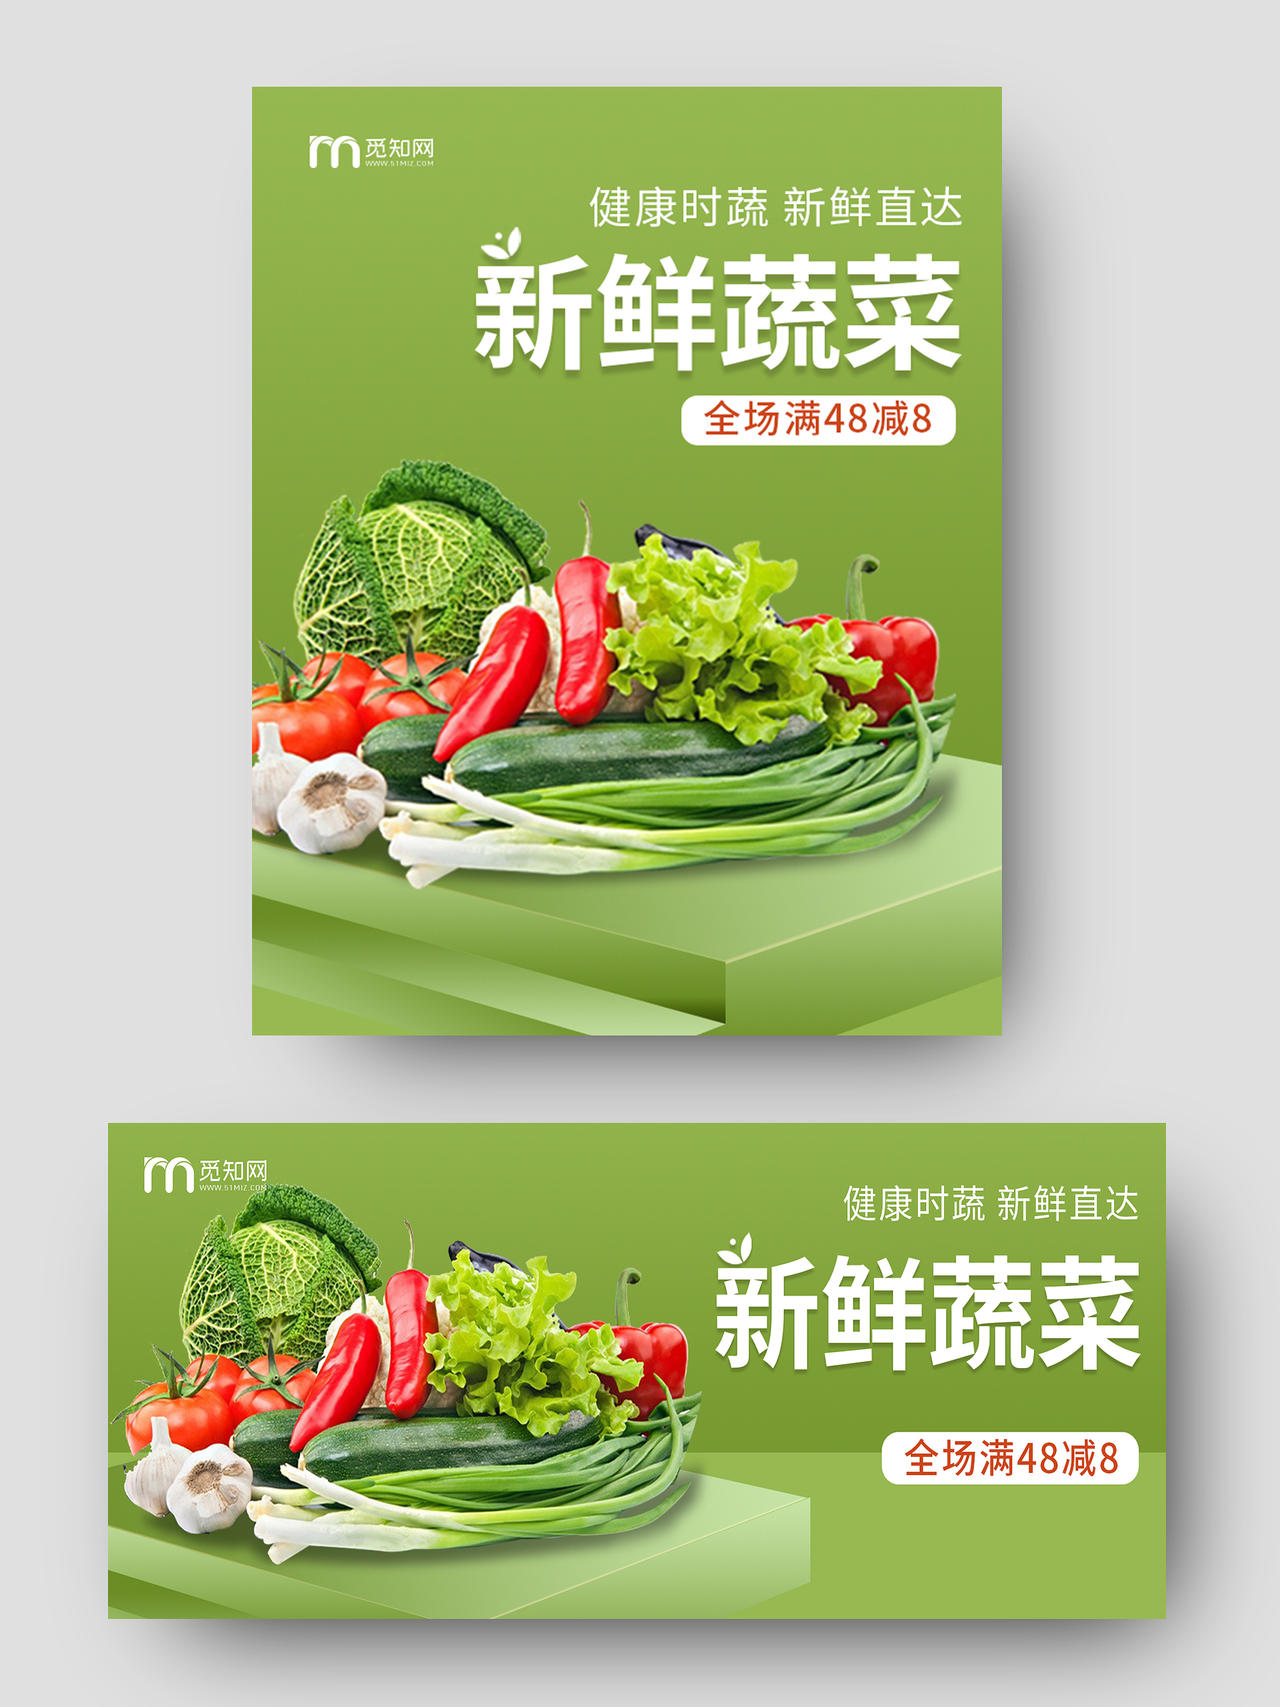 绿色清新新鲜蔬果展示台健康时蔬新鲜直达满减淘宝电商促销海报果蔬